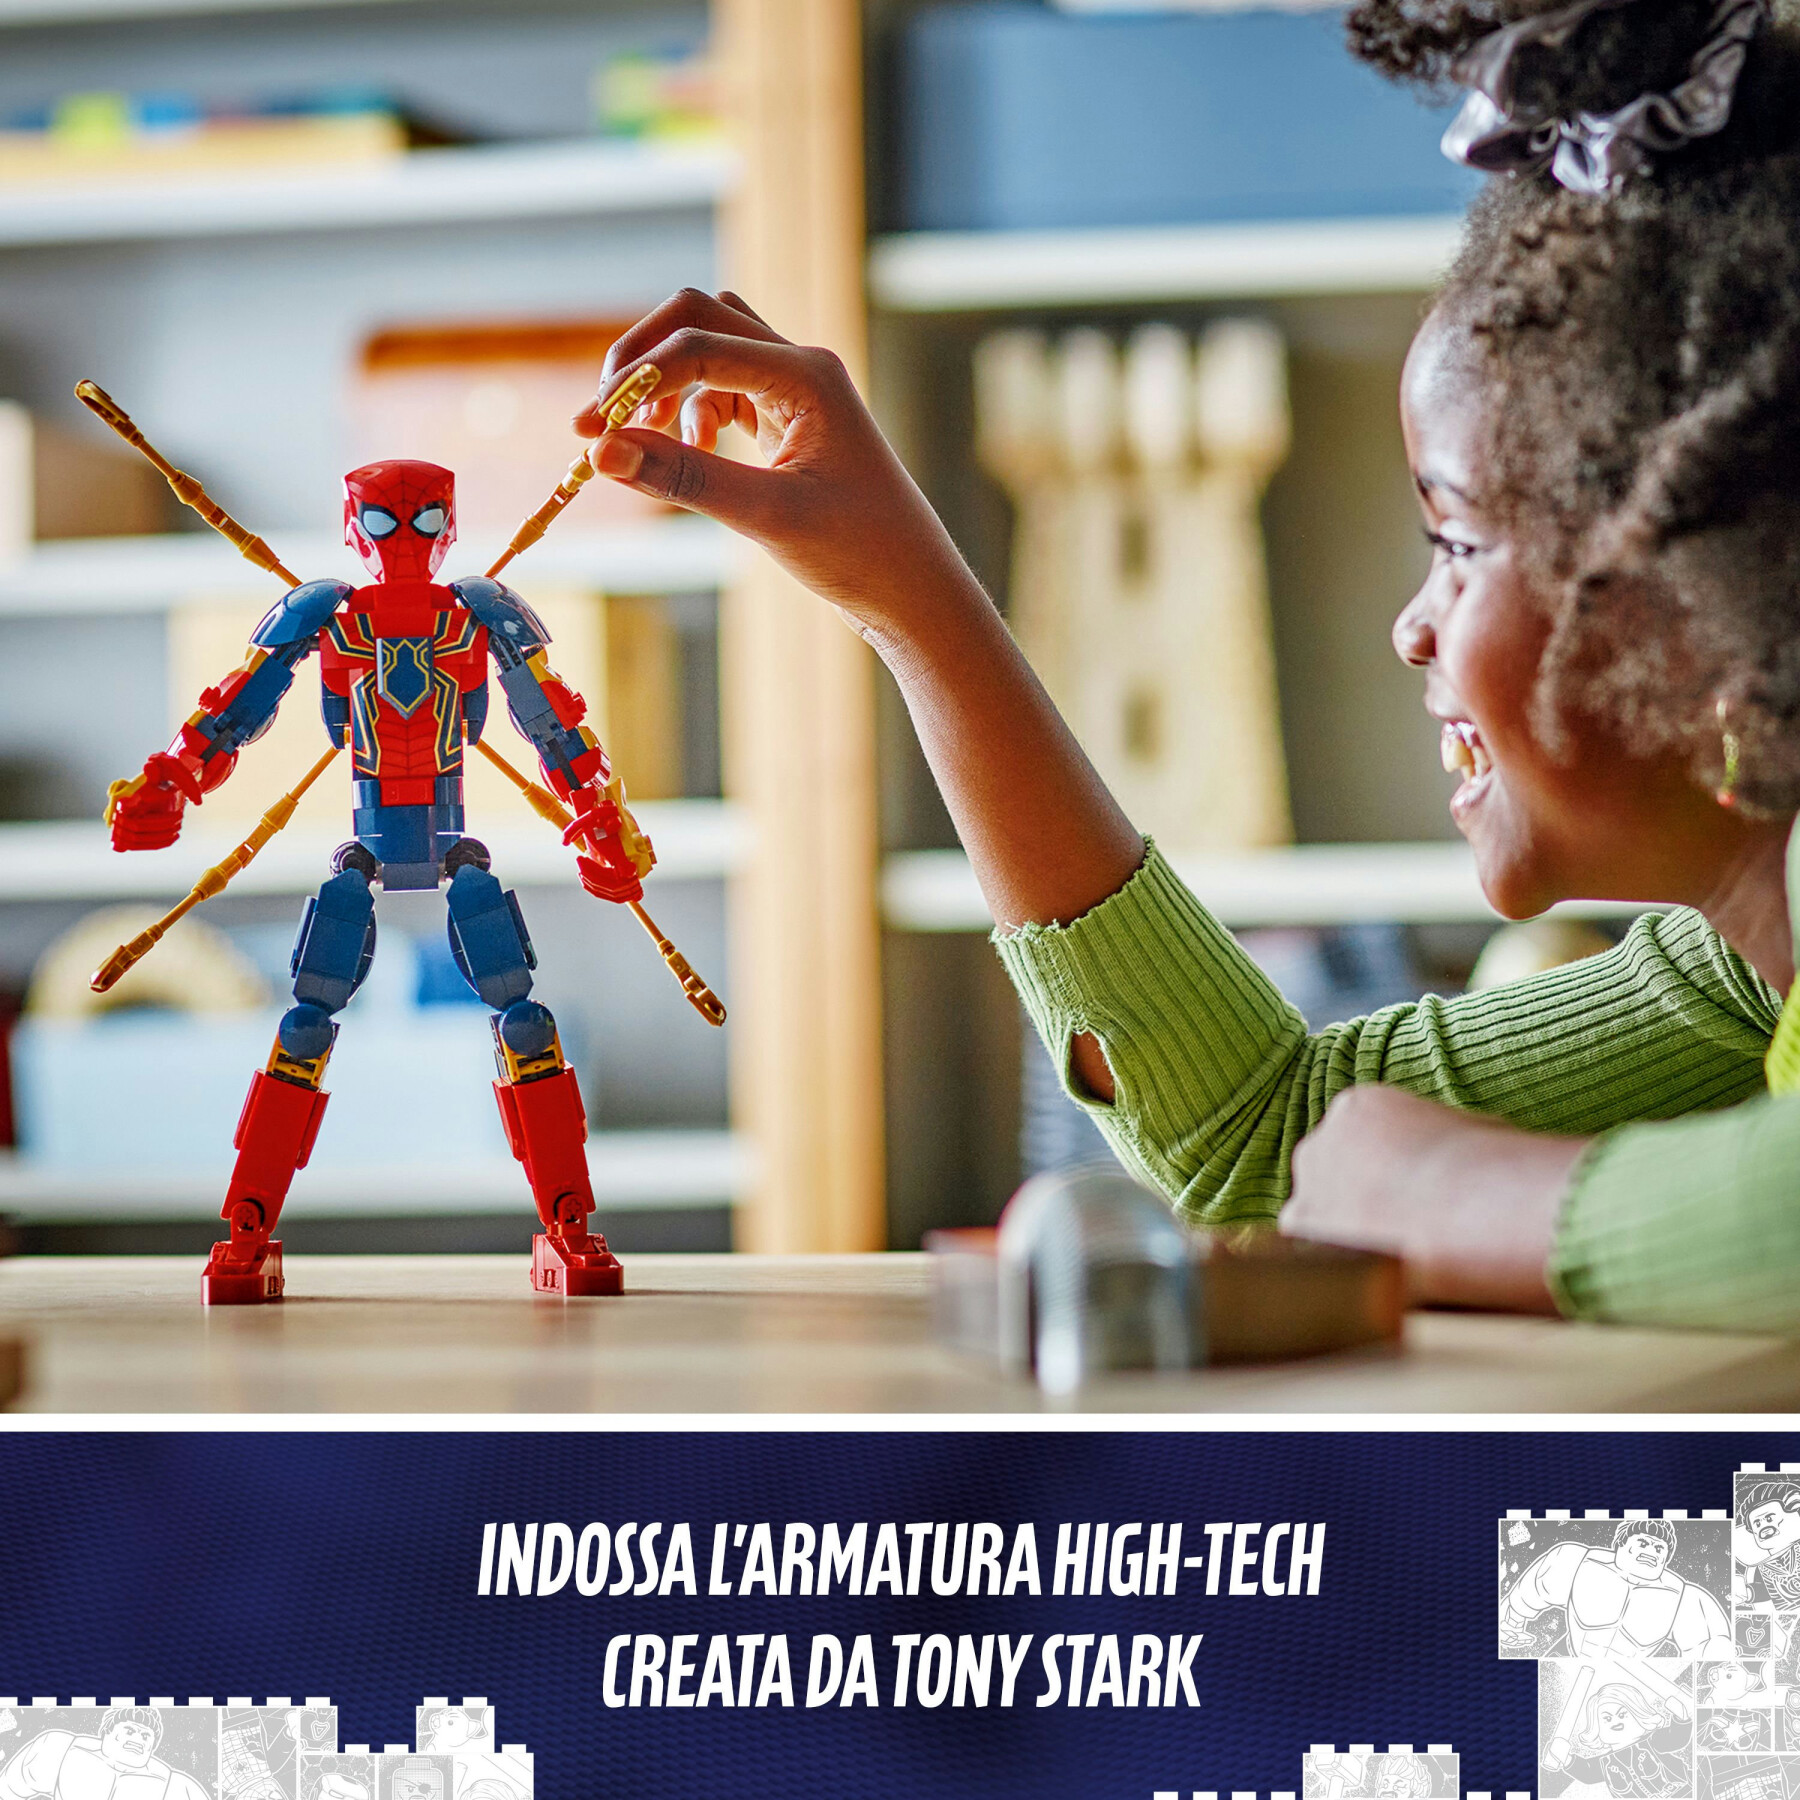 Lego marvel 76298 personaggio costruibile di iron spider-man, gioco per bambini 8+, supereroe snodabile con 4 braccia extra - LEGO SUPER HEROES, Avengers, Spiderman